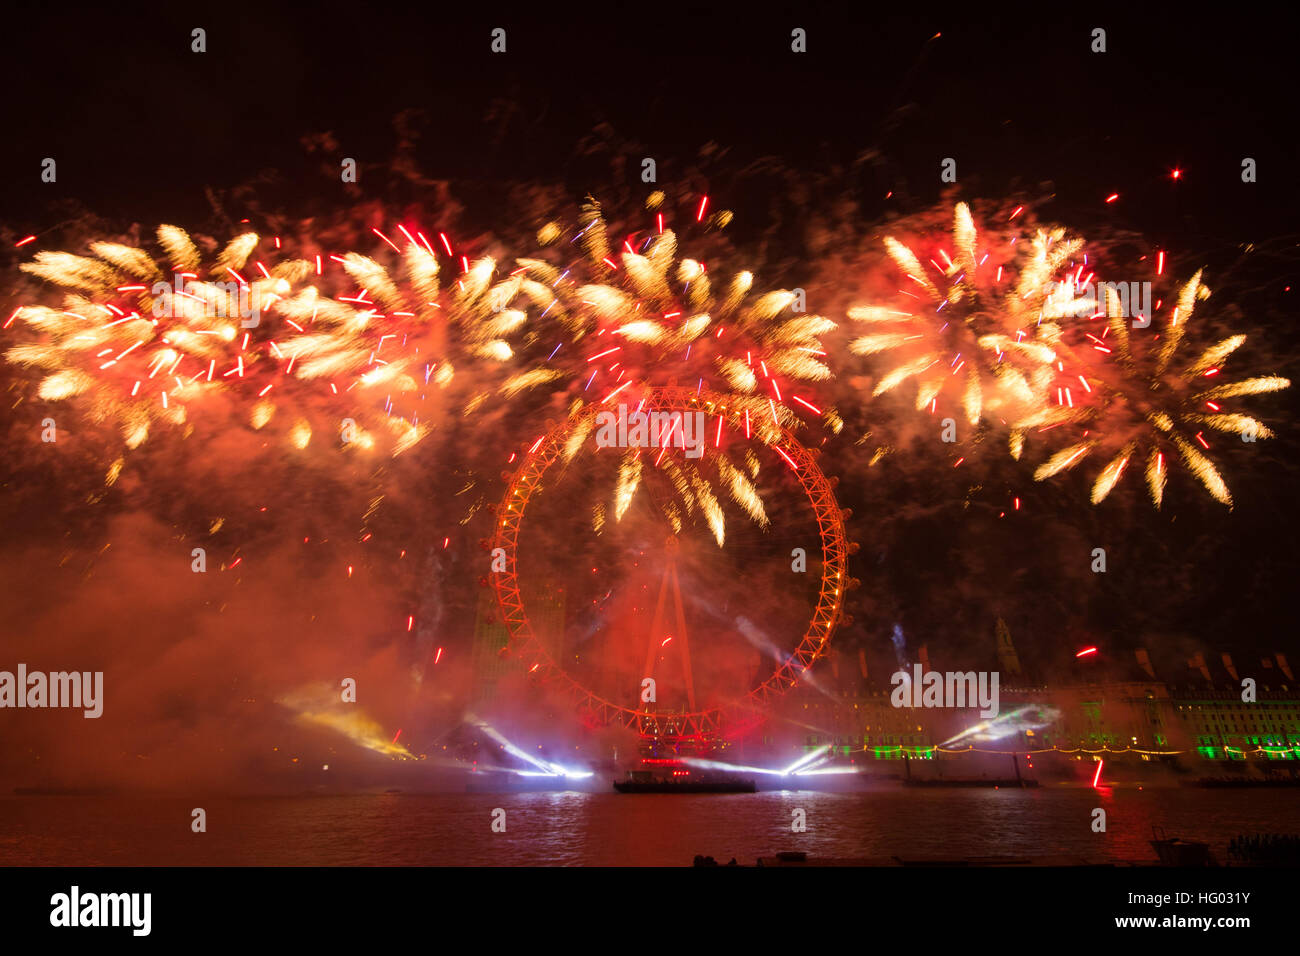 Un spectaculaire feu d'artifice se félicite de la nouvelle année, 2017, à Londres, sur la Tamise. Banque D'Images